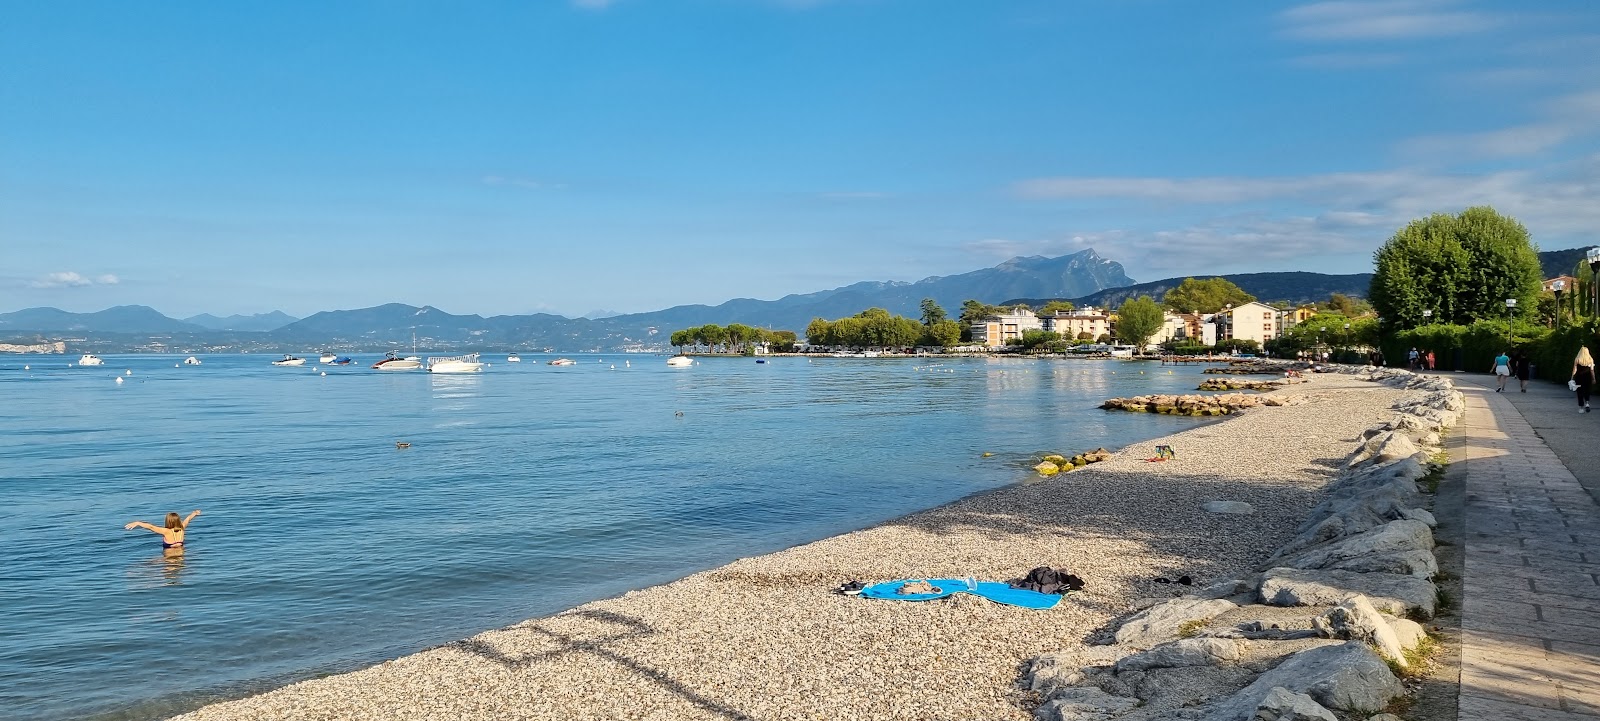 Foto von Spiaggia Lido di Cisano mit grauer kies Oberfläche